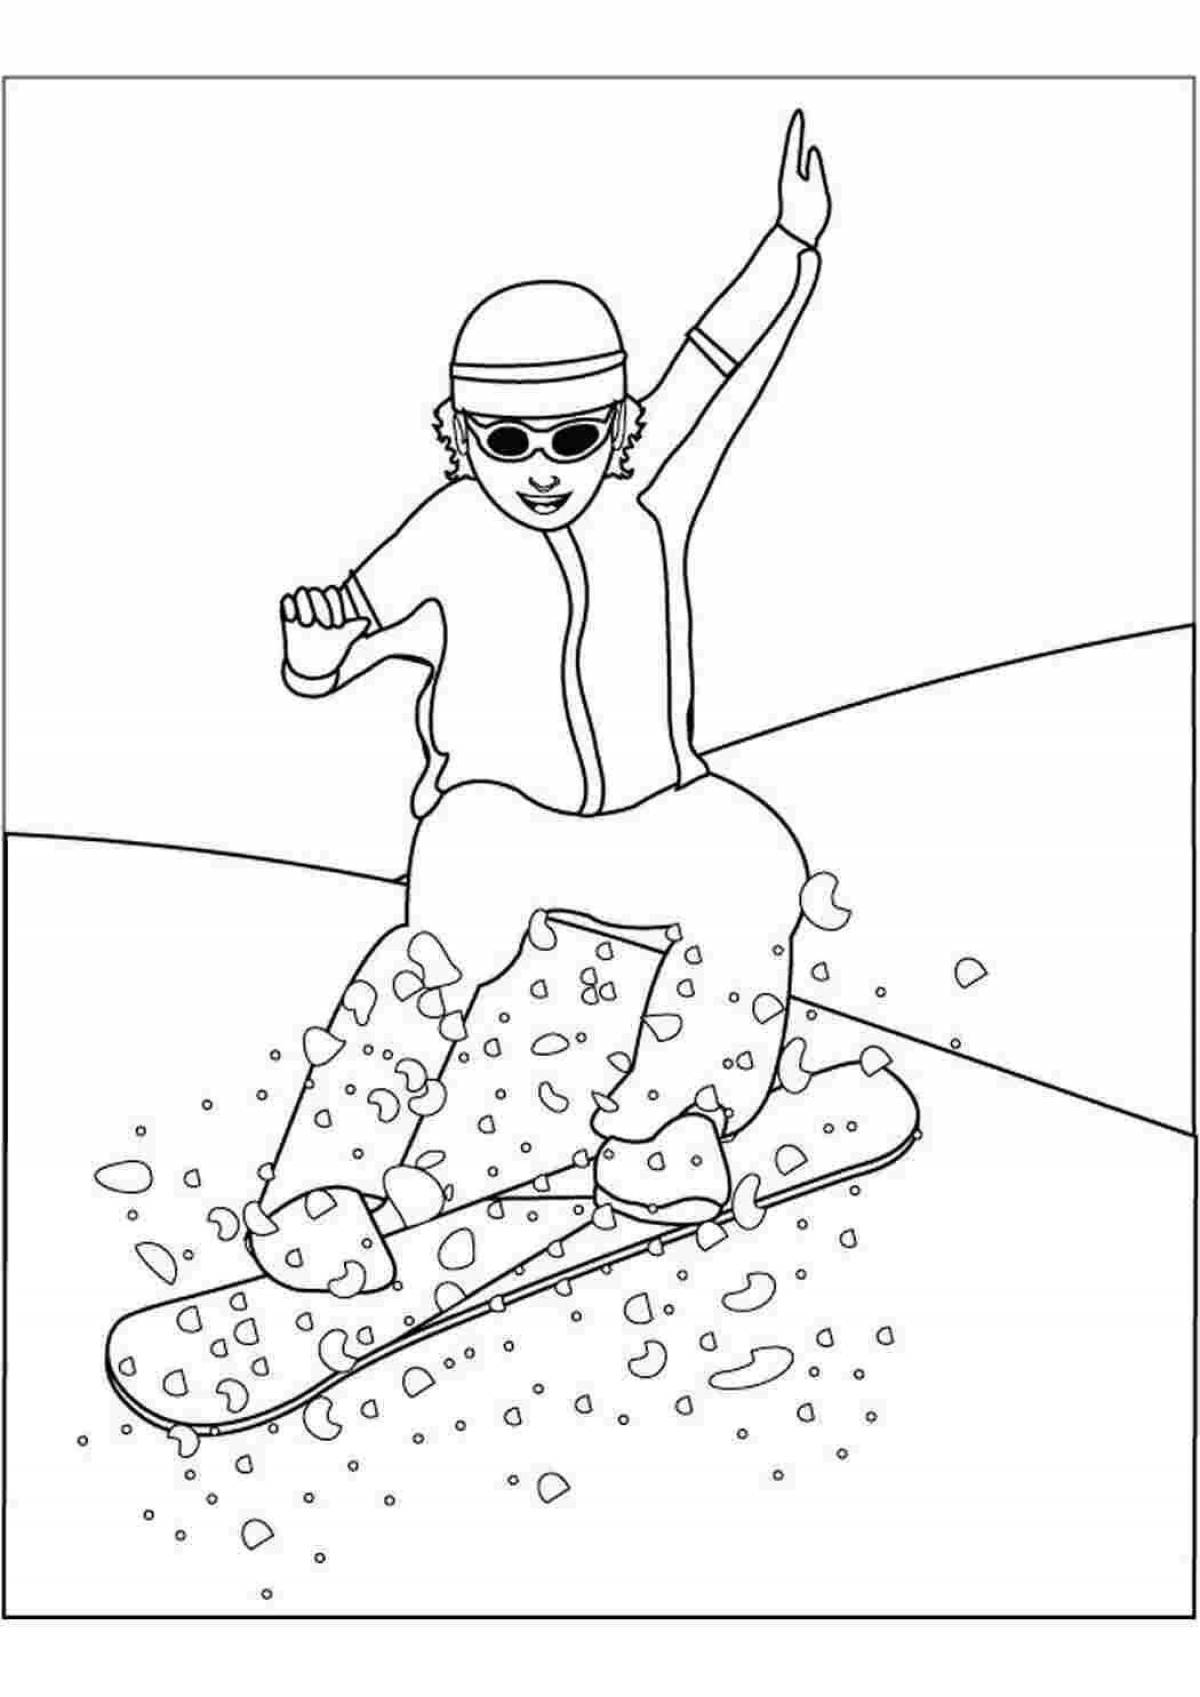 Красочная страница раскраски сноубордиста для детей